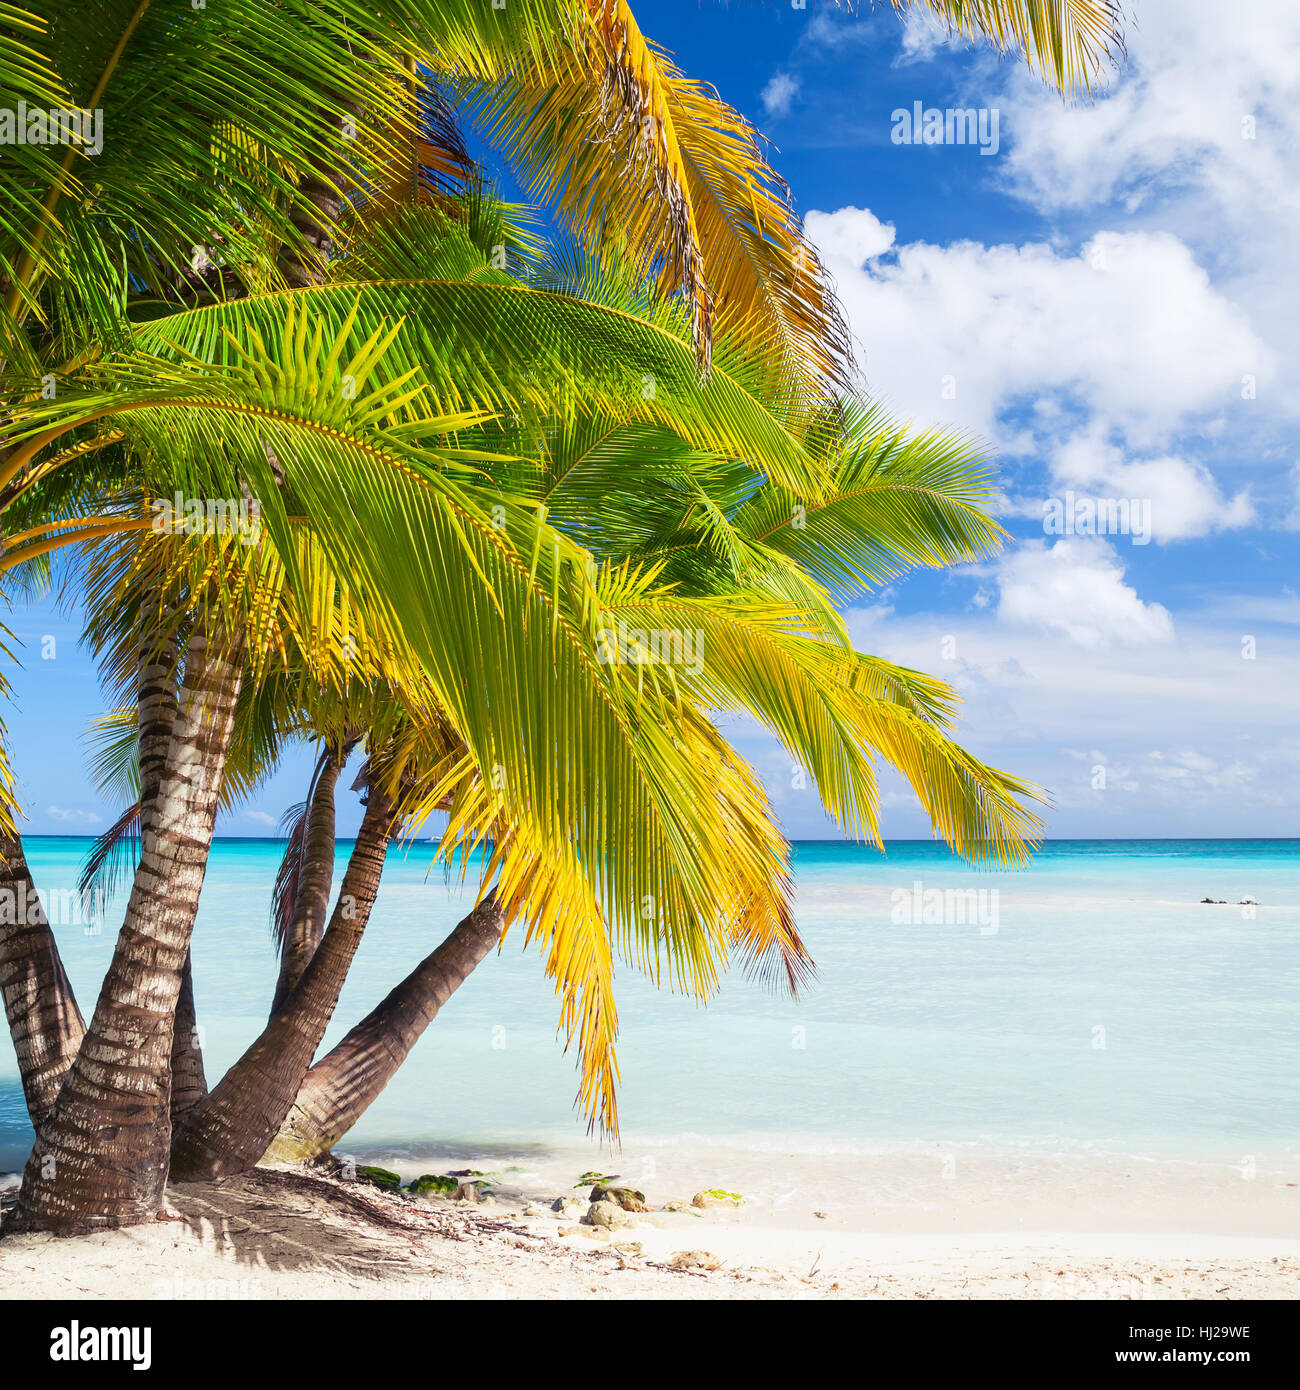 Cocotiers poussent sur une plage de sable blanc. La côte de la mer des Caraïbes, la République dominicaine, l'île de Saona. La place naturelle de fond photo Banque D'Images